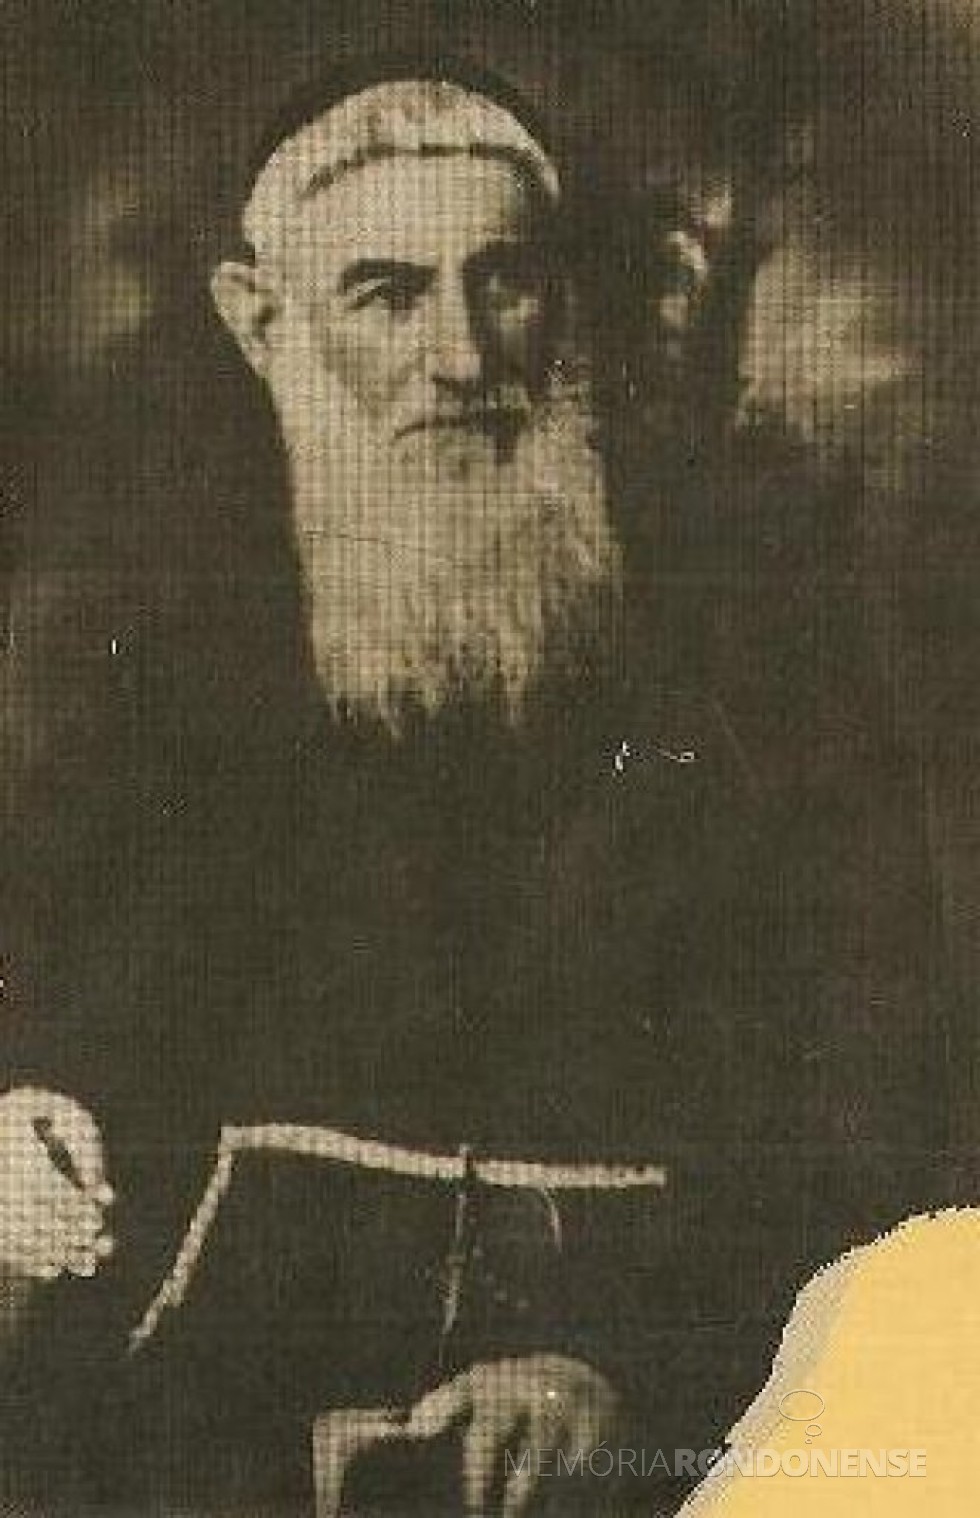 Frei Timóteo de Castelnuovo falecido em maio de 1895.
Imagem: Acervo Diocese de Ourinhos (SP) - FOTO 2 -